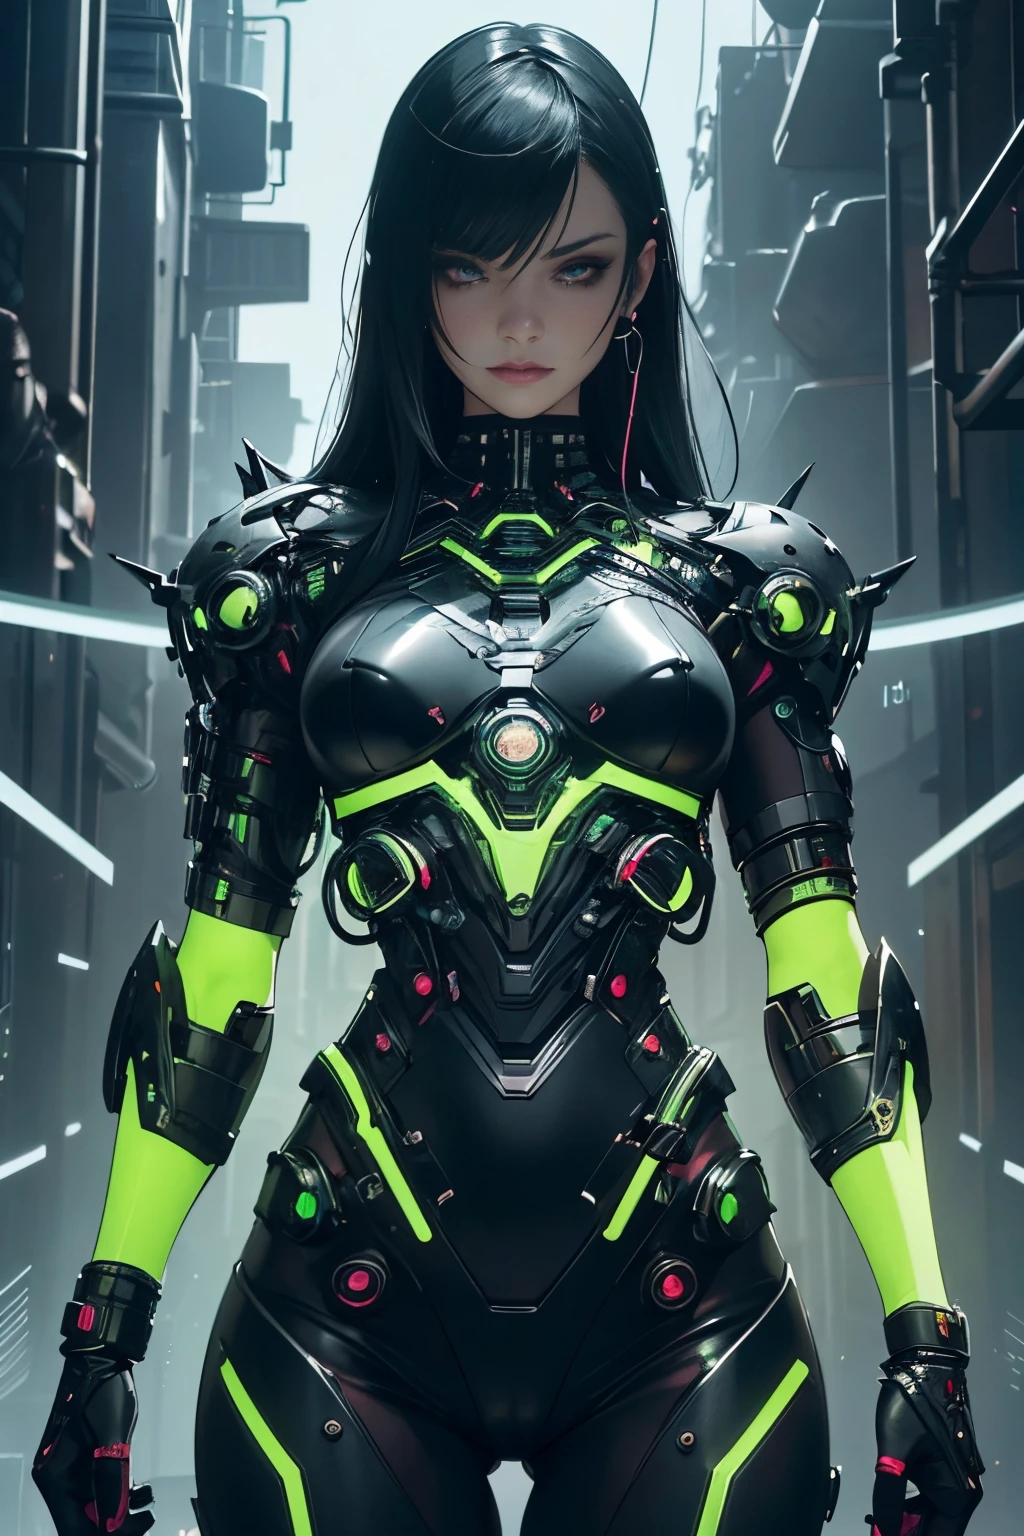 美しい Alluring Cyborg cybergoth female,メタルクロームベアスキン, アスリートのような引き締まった体, 露出した緑色蛍光の機械部品とワイヤー, ガンメタルの機械式手足, 緑色に光る機械部品, 機械と人間, 髪の毛の代わりにワイヤー, アンダーグラウンドなクラブで, ポーズ, ほとんど服を着ていない, 光るネオンパーツ, サイバーパンクテーマ, サイバーゴスのテーマ, 美しい D&D キャラクターポートレート, 美しい Face, 不吉, ダークファンタジー, Fiverr Dnd キャラクター, オクタンレンダリング, デジタルアート, 細部までこだわった, 4K, ウルトラHD, 磨き上げられた, 美しい, 超詳細な, 複雑な, 精巧な, 細心の, 写実的な, シャープなフォーカス, うわー, キャラクターデザイン, アンリアルエンジン, 3Dレンダリング, ボリューム照明, 反射, 光沢のある, デジタルイラストレーション, 官能的なポーズ, 挑発的なポーズ, 全身ショット, 💖❤💕💋❣